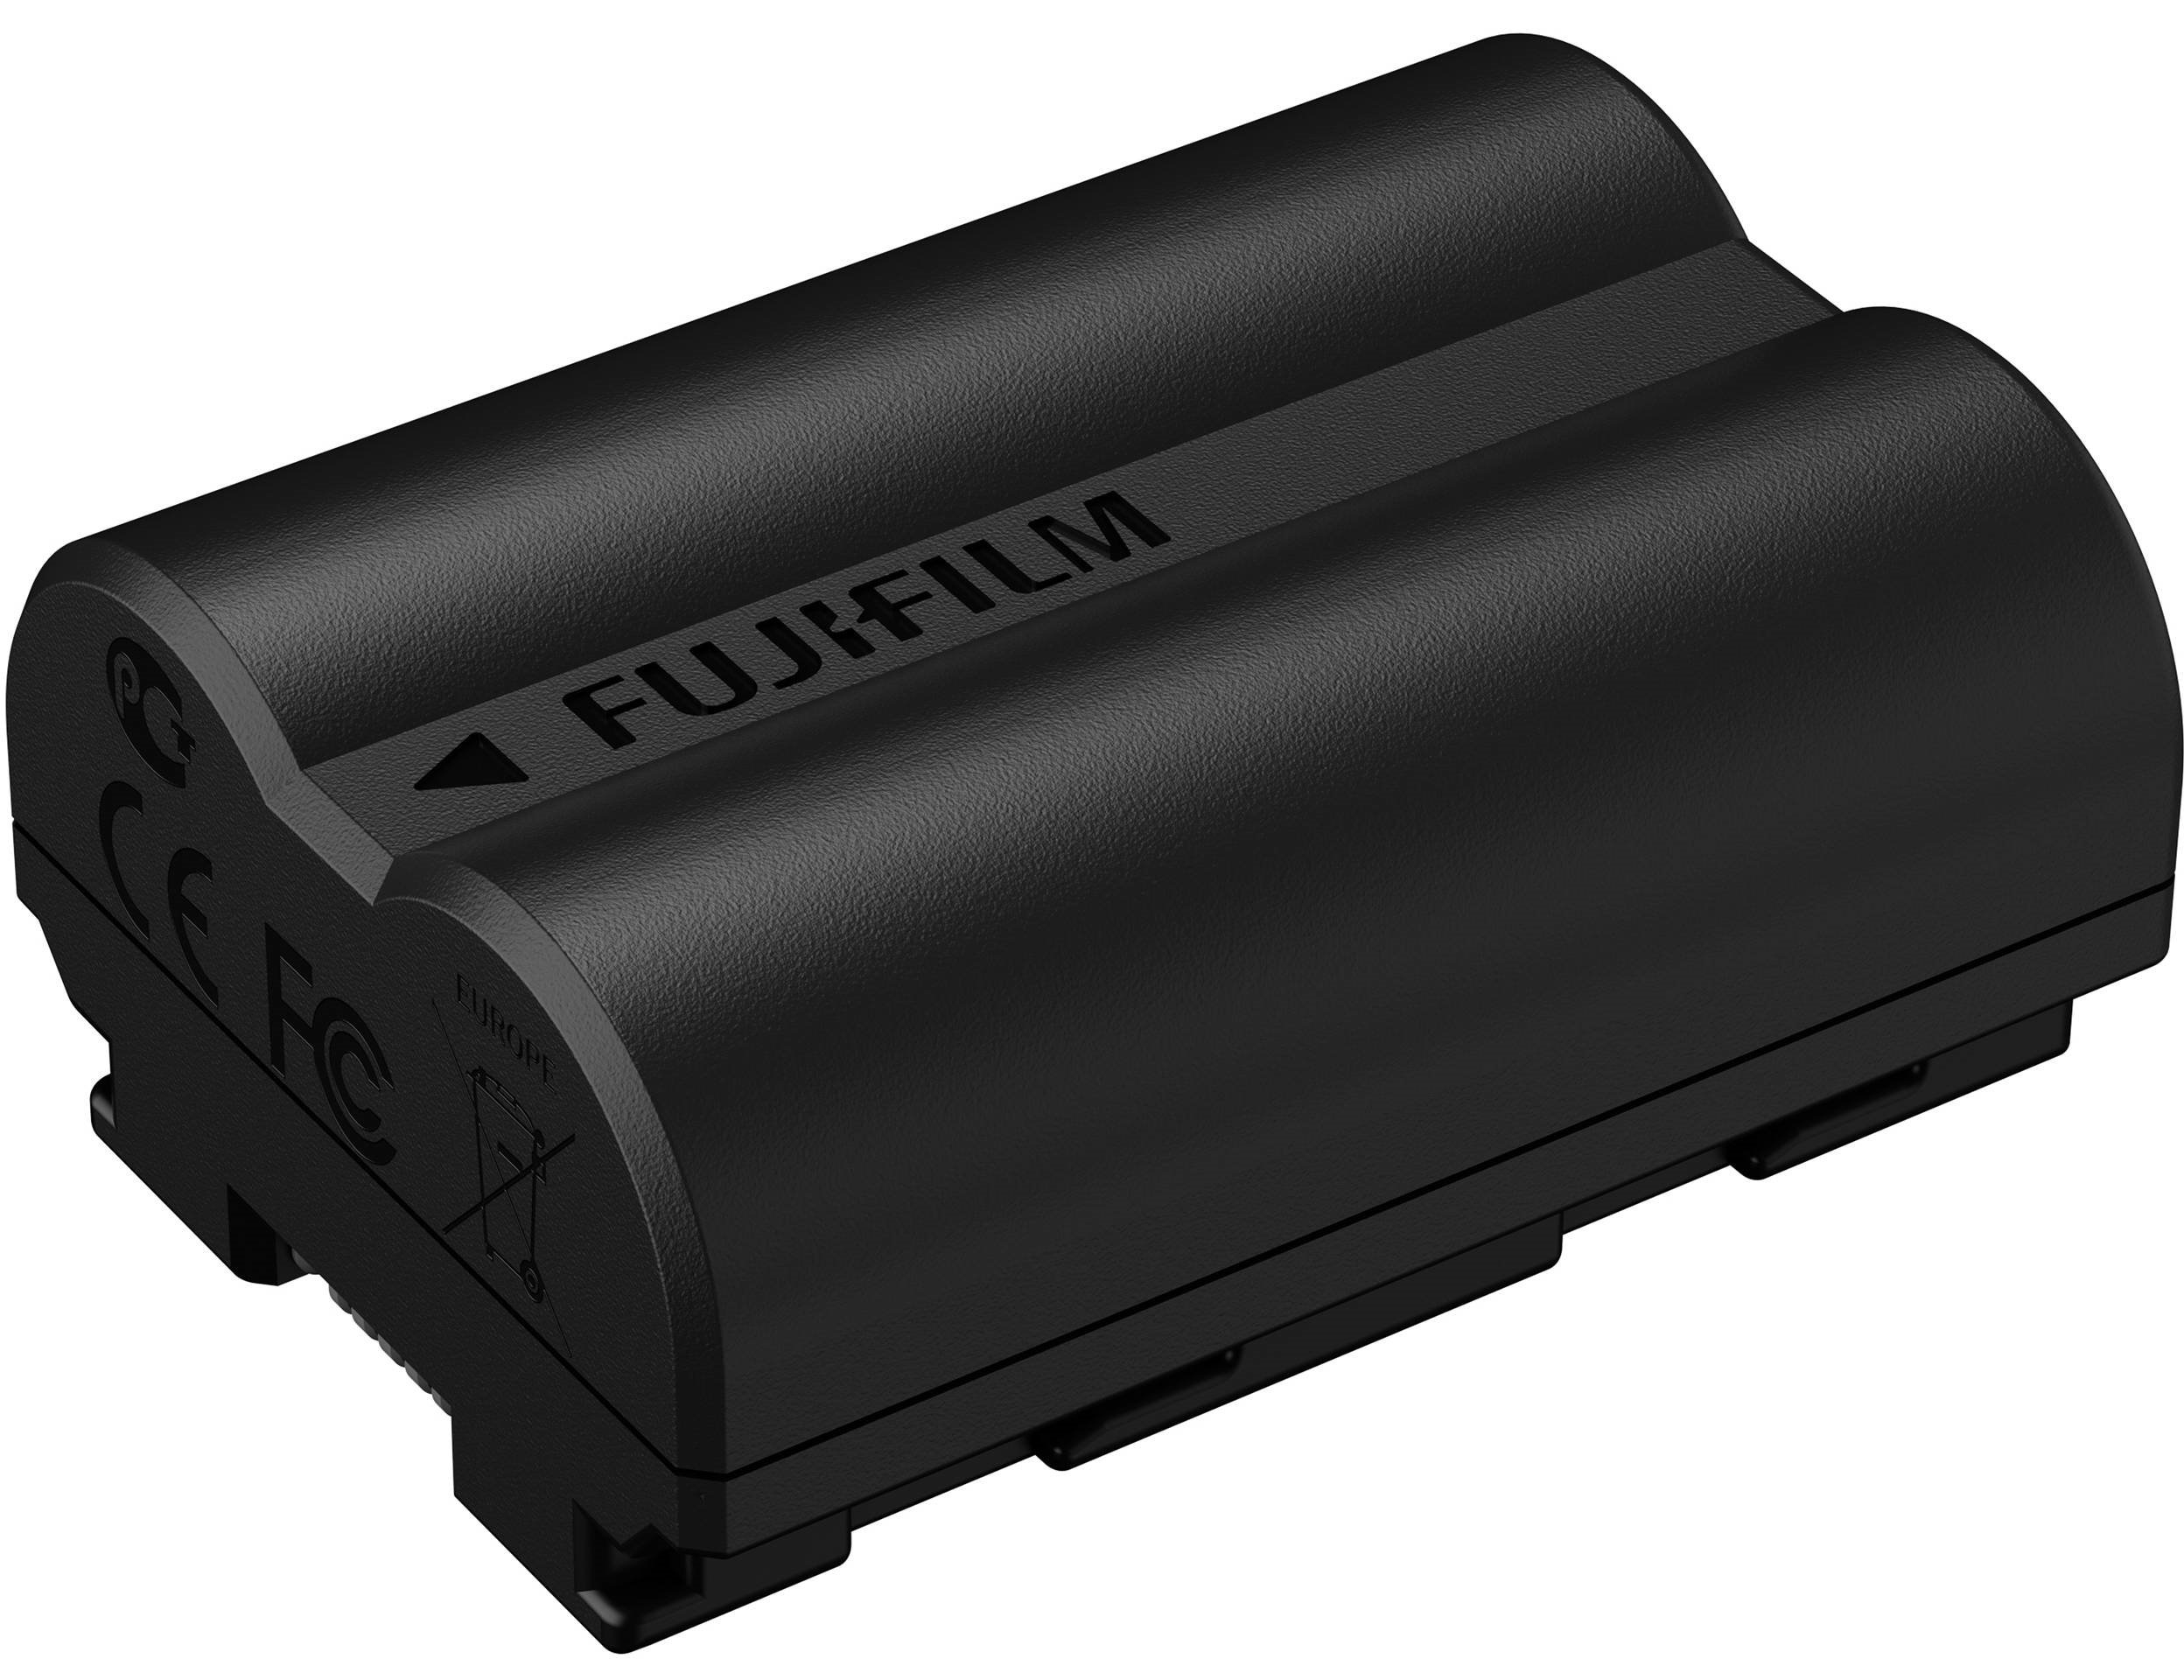 Fujifim NP-W235 Battery - Ảnh sản phẩm